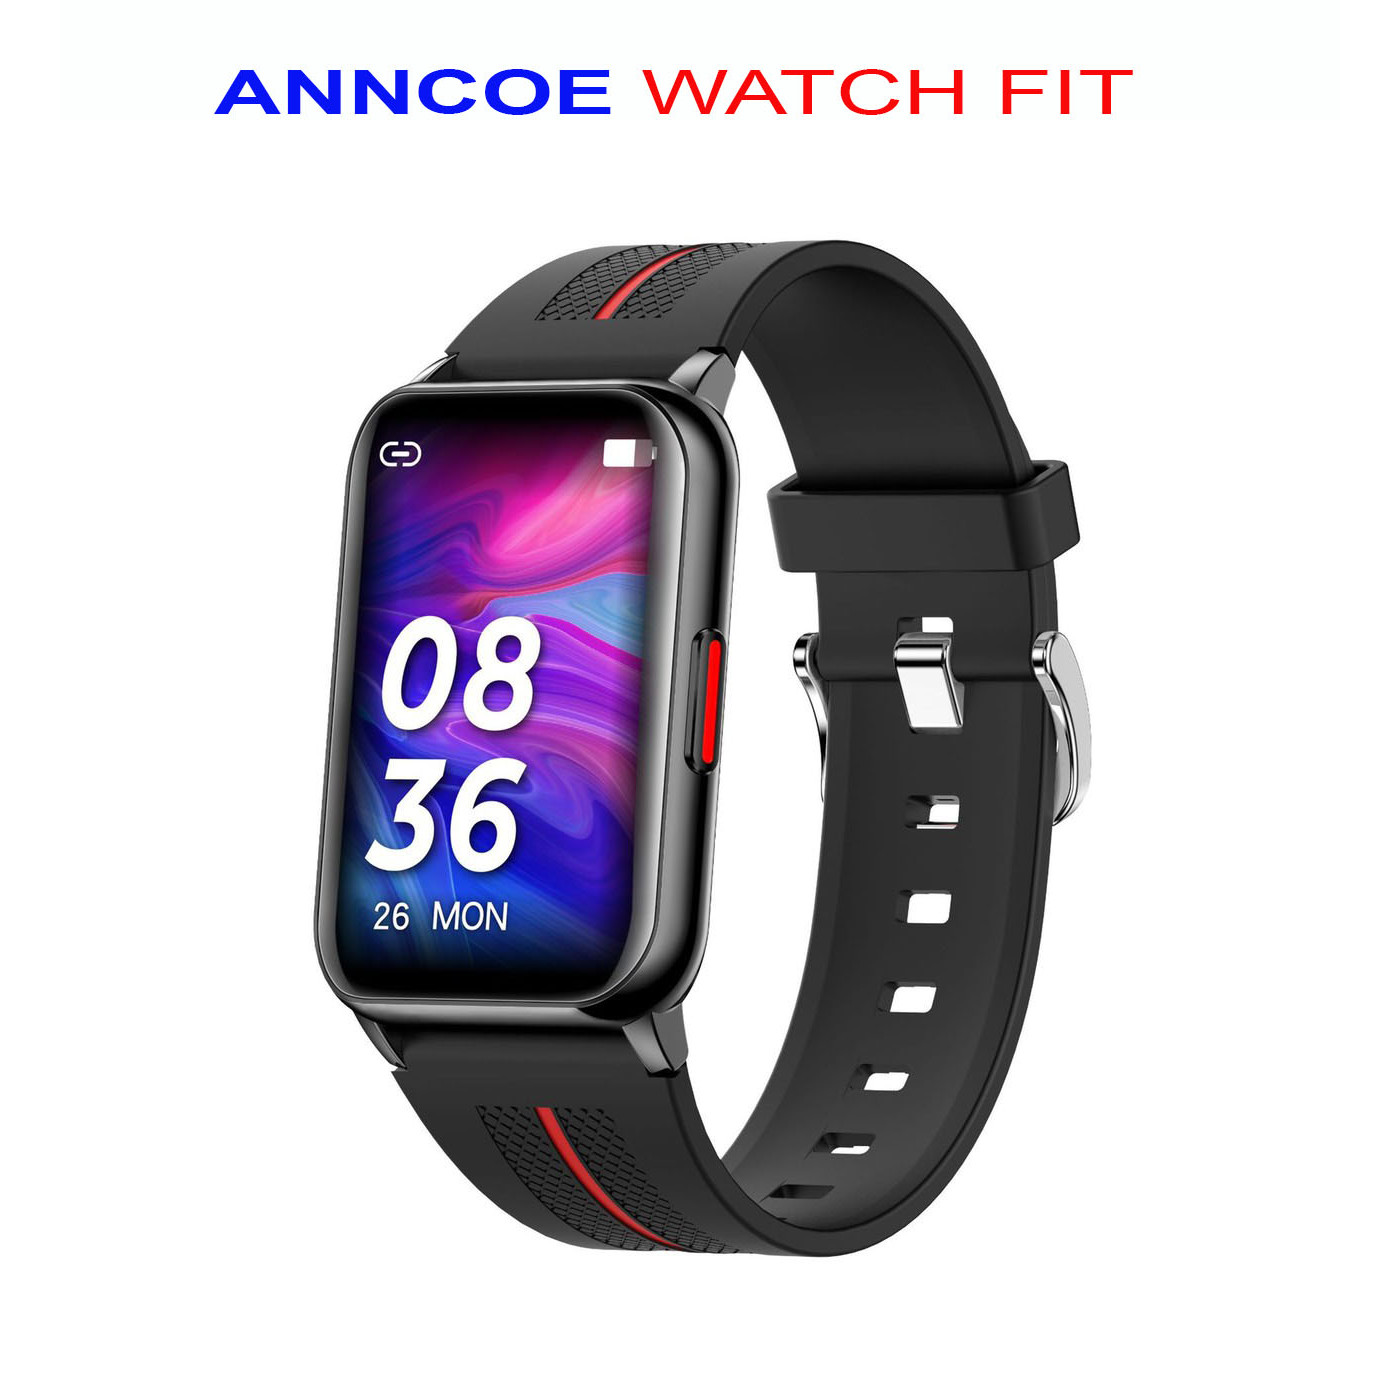 Đồng hồ thông minh Anncoe Watch Fit A76 Plus - Hàng Phân Phối Chính Hãng